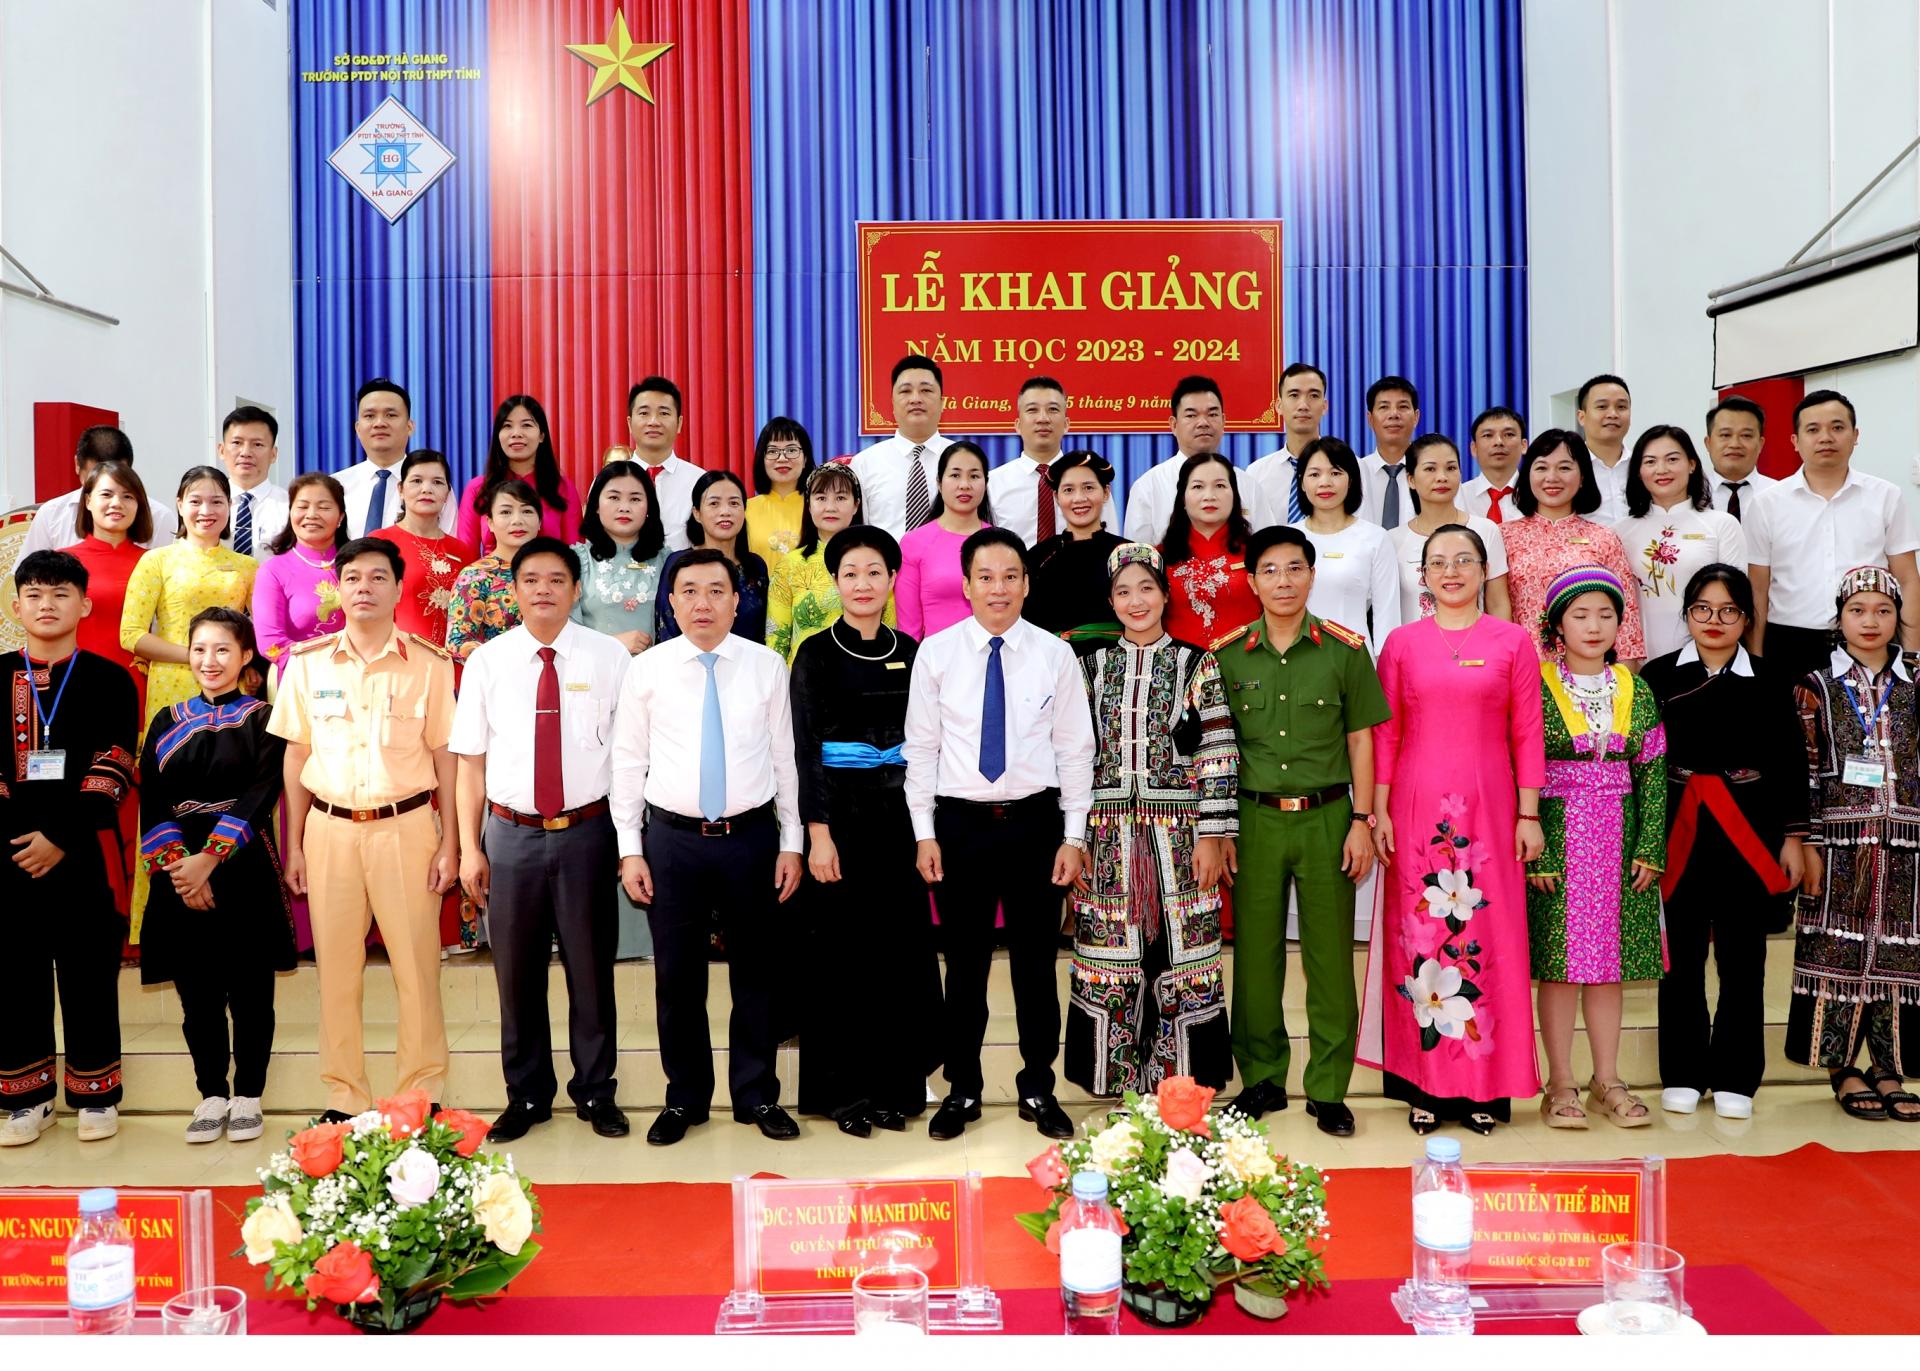 Quyền Bí thư Tỉnh ủy Nguyễn Mạnh Dũng và các đại biểu chụp ảnh lưu niệm với các thầy, cô giáo Trường PTDTNT THPT tỉnh.